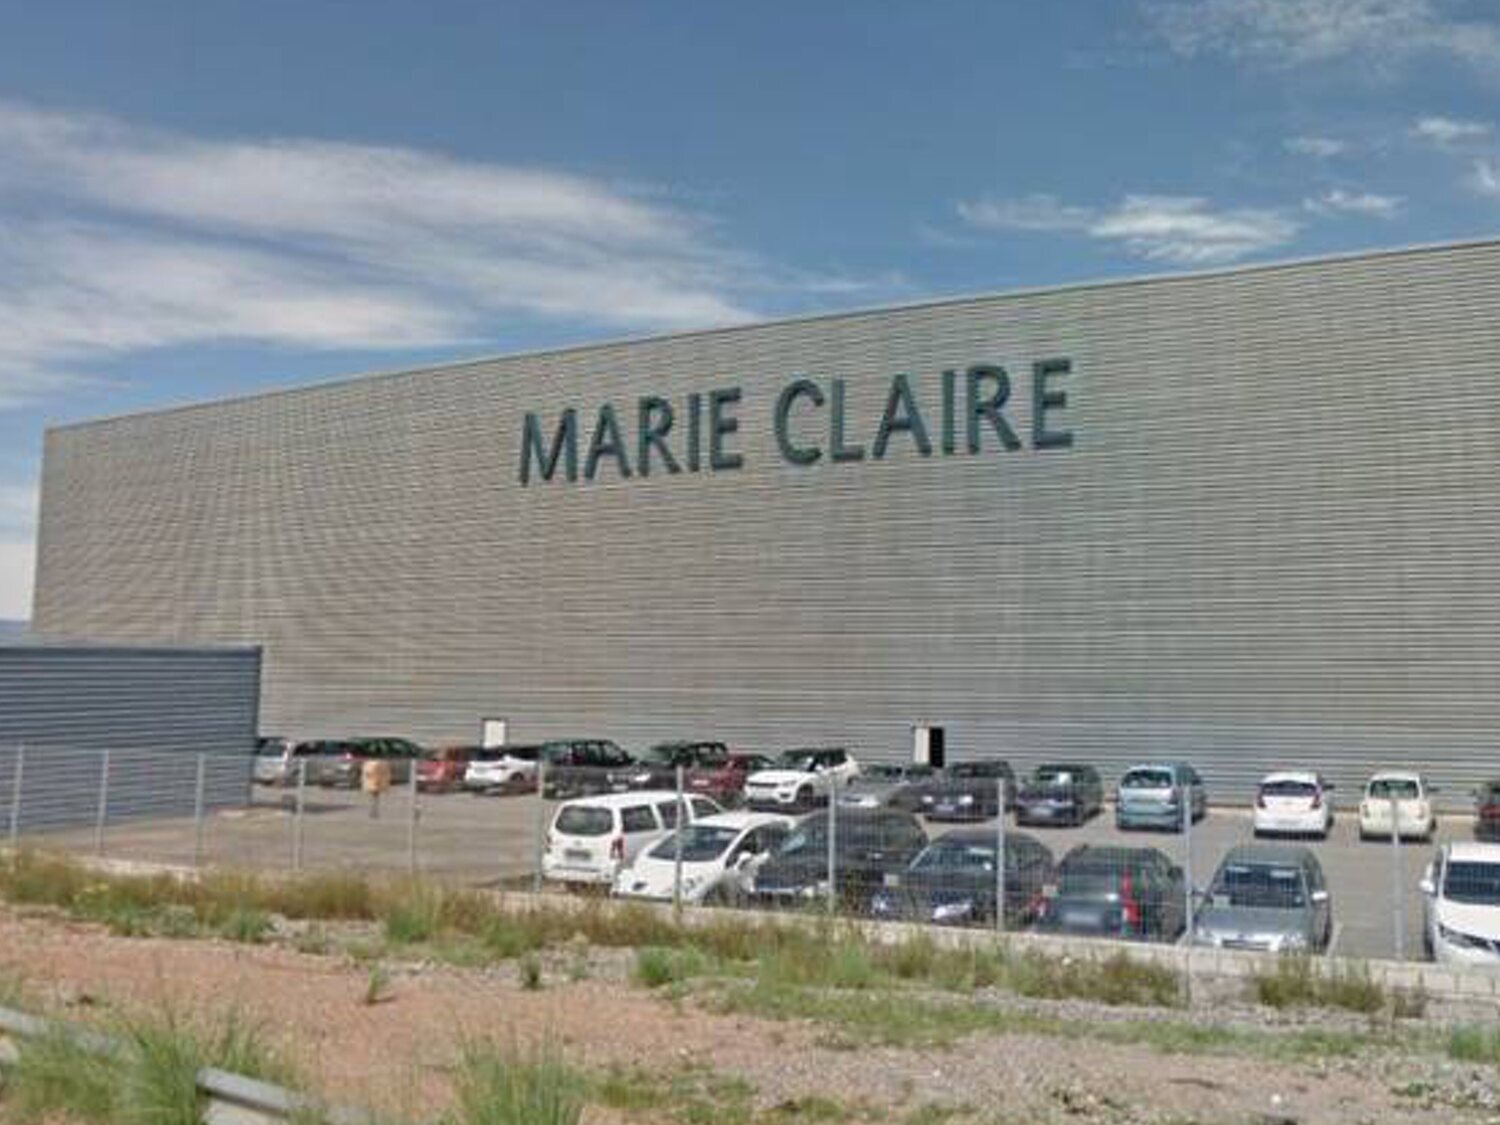 La histórica firma Marie Claire prepara su cierre tras más de un siglo de historia